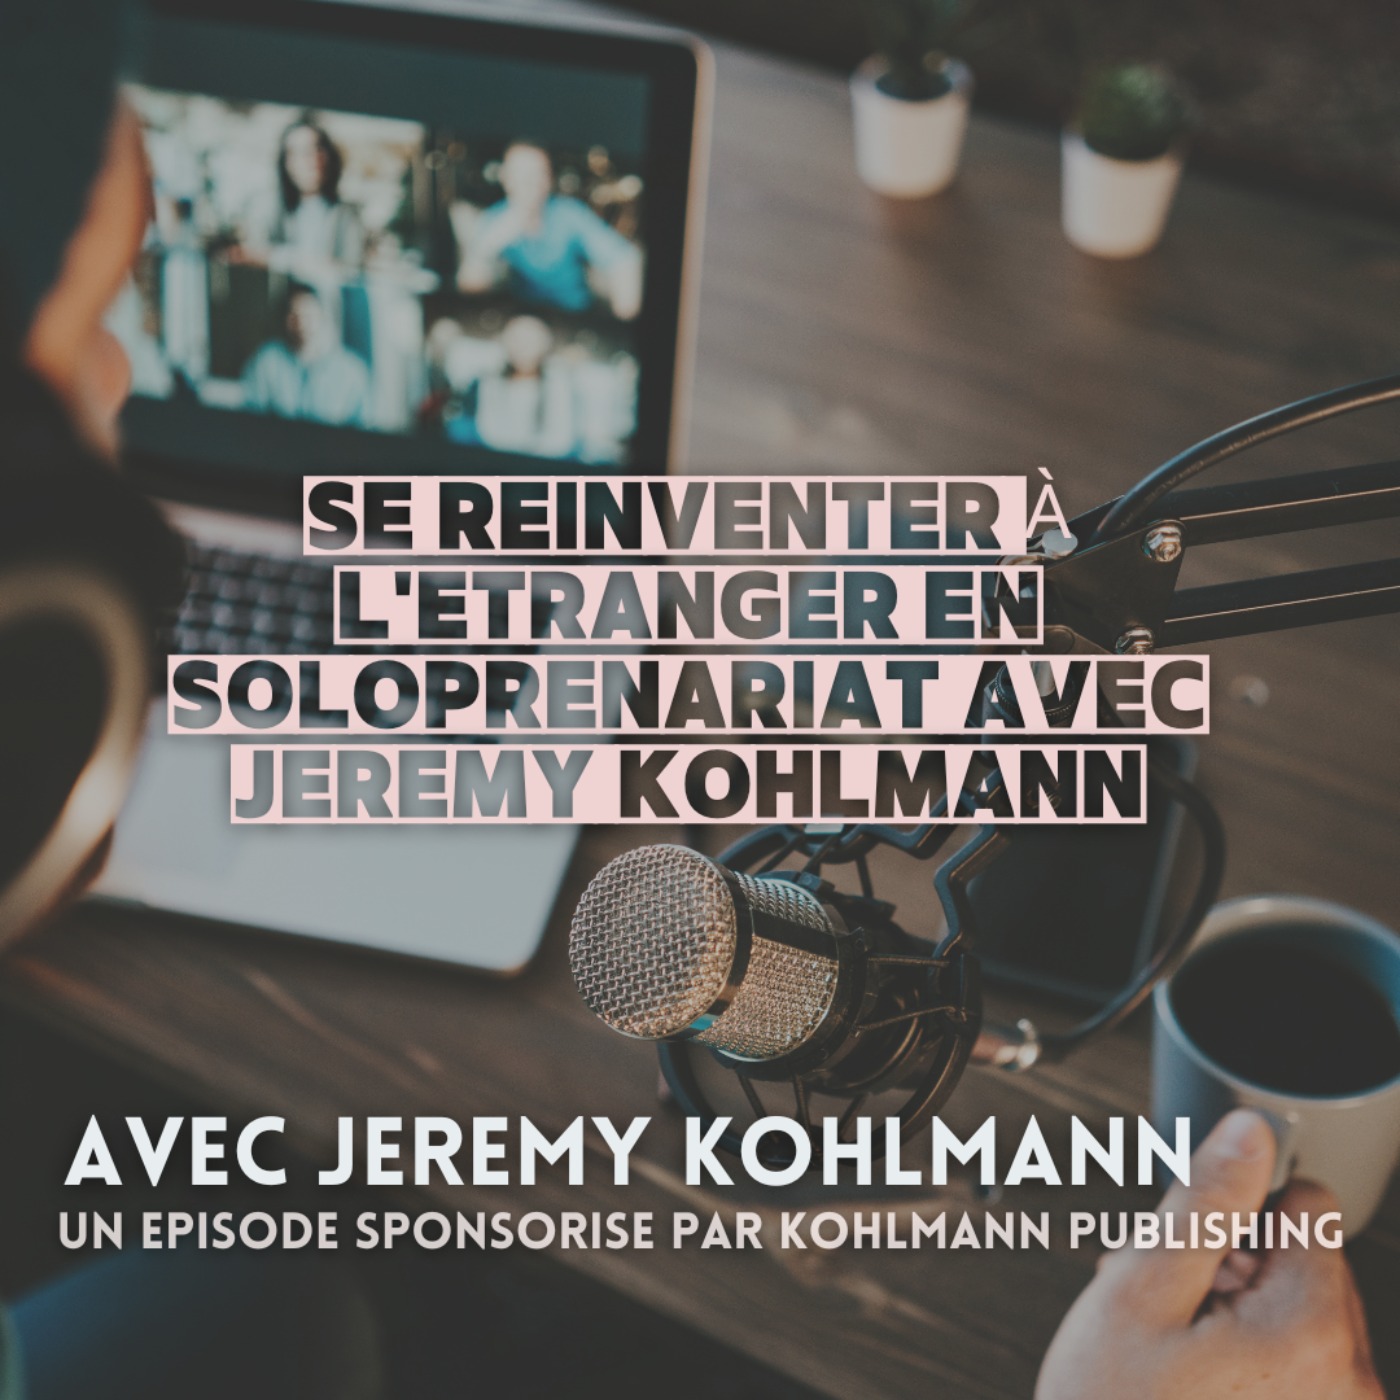 Episode sponsorisé : se réinventer à l’étranger en soloprenariat avec Jeremy Kohlmann